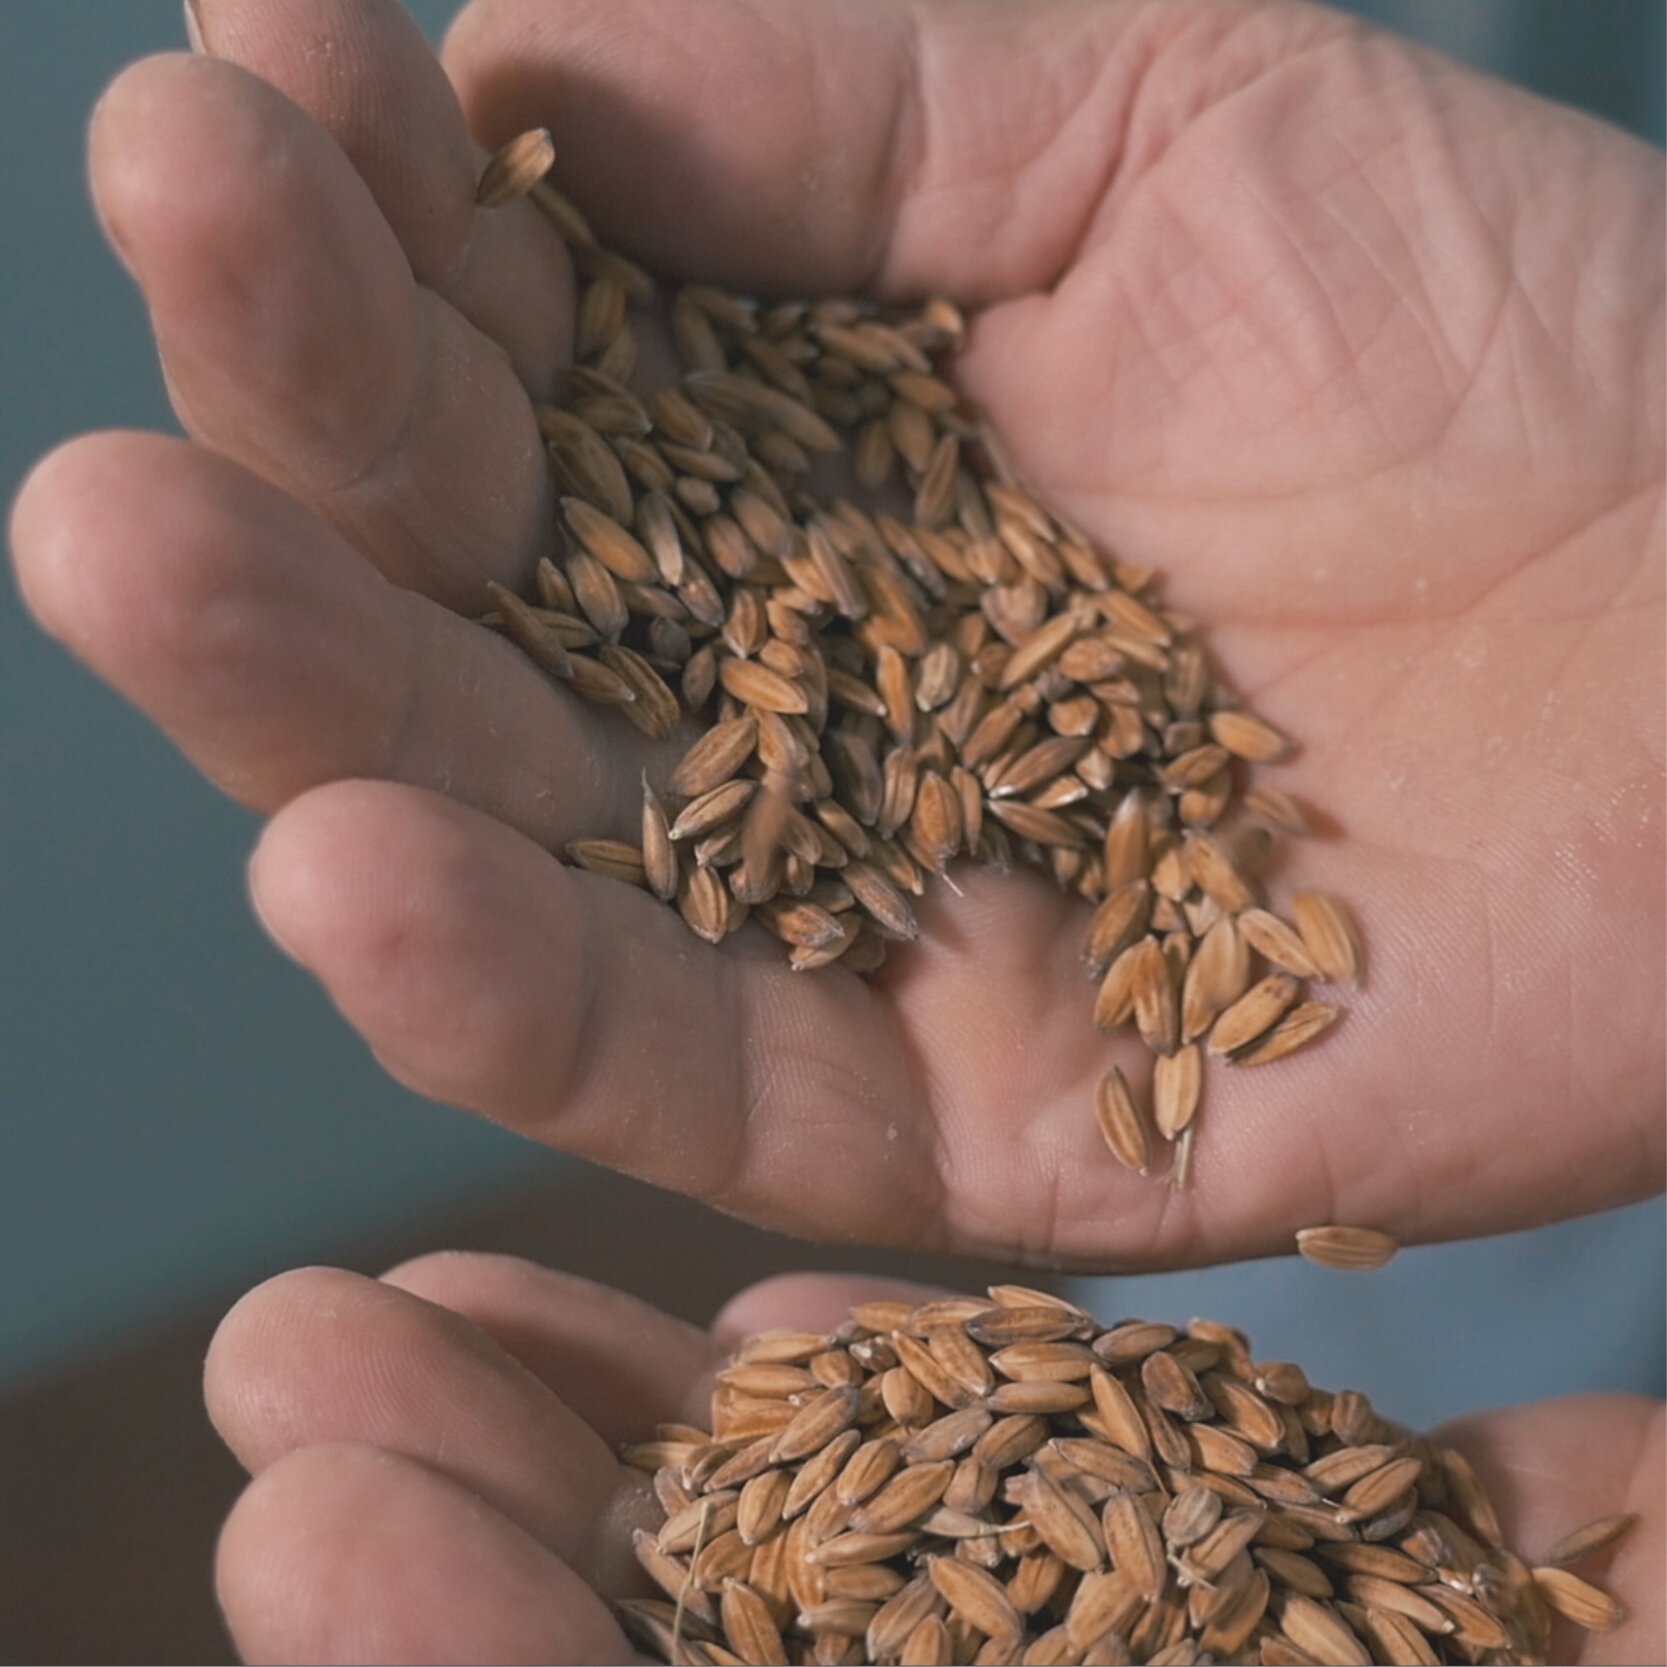 Noi ci crediamo anche quest'anno, 𝙖𝙗𝙗𝙞𝙖𝙢𝙤 𝙨𝙚𝙢𝙞𝙣𝙖𝙩𝙤!
Quest'anno abbiamo utilizzato una tecnica alternativa di semina 𝙨𝙚𝙣𝙯'𝙖𝙘𝙦𝙪𝙖, affondando per bene i piccoli semi per andare a trovare l'umidit&agrave; del terreno.
Forza che ce